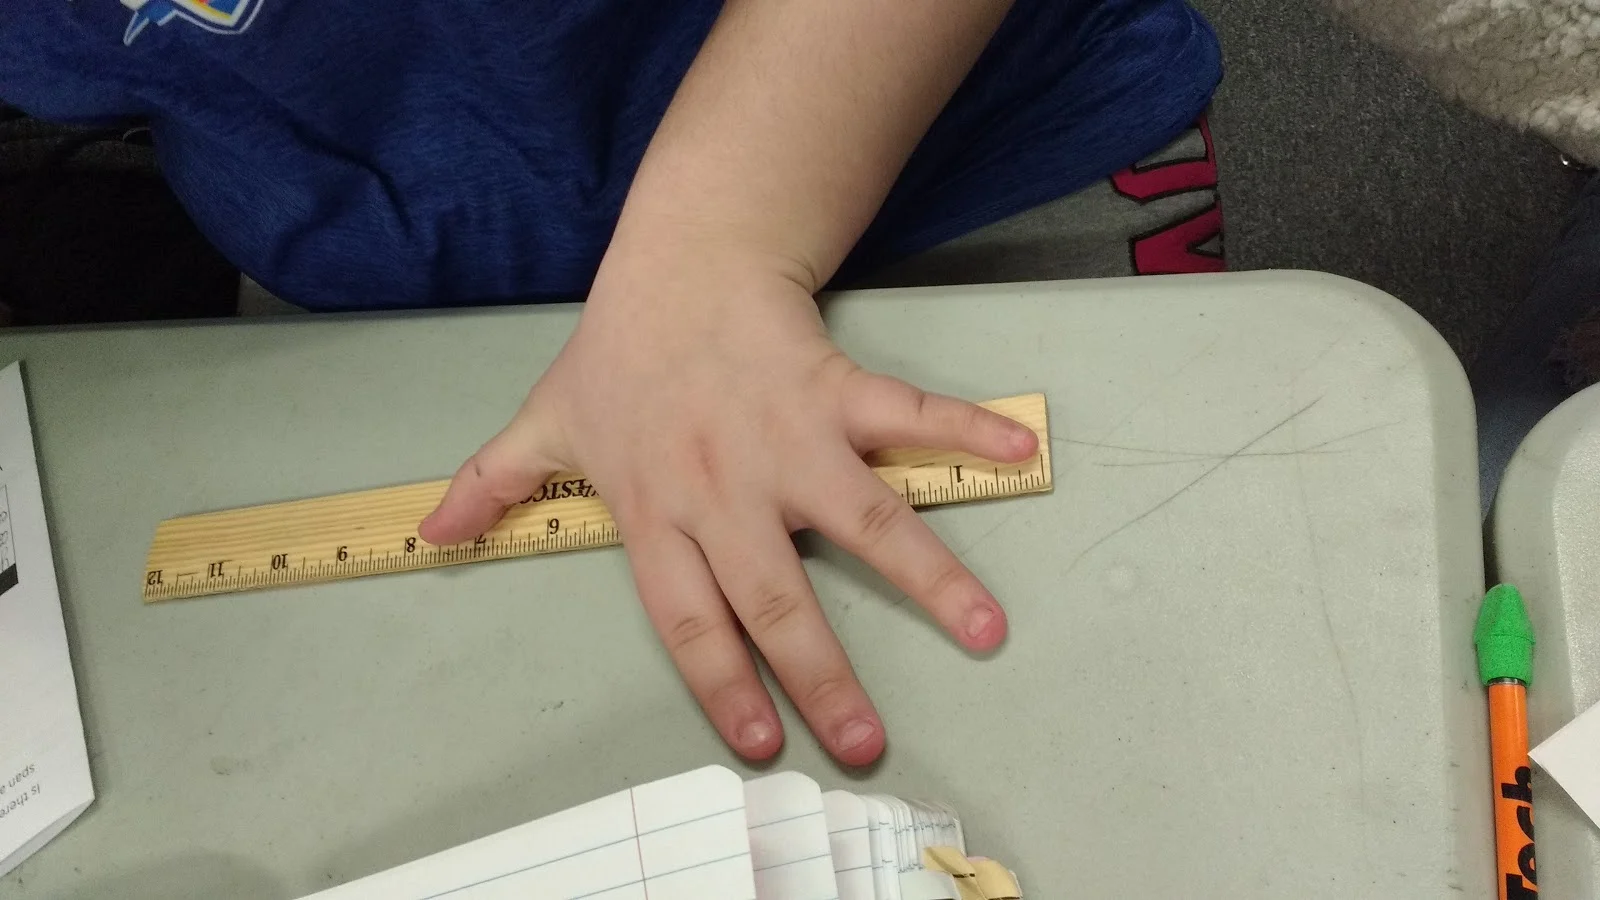 student measuring handspan for starburst scatterplot activity. 